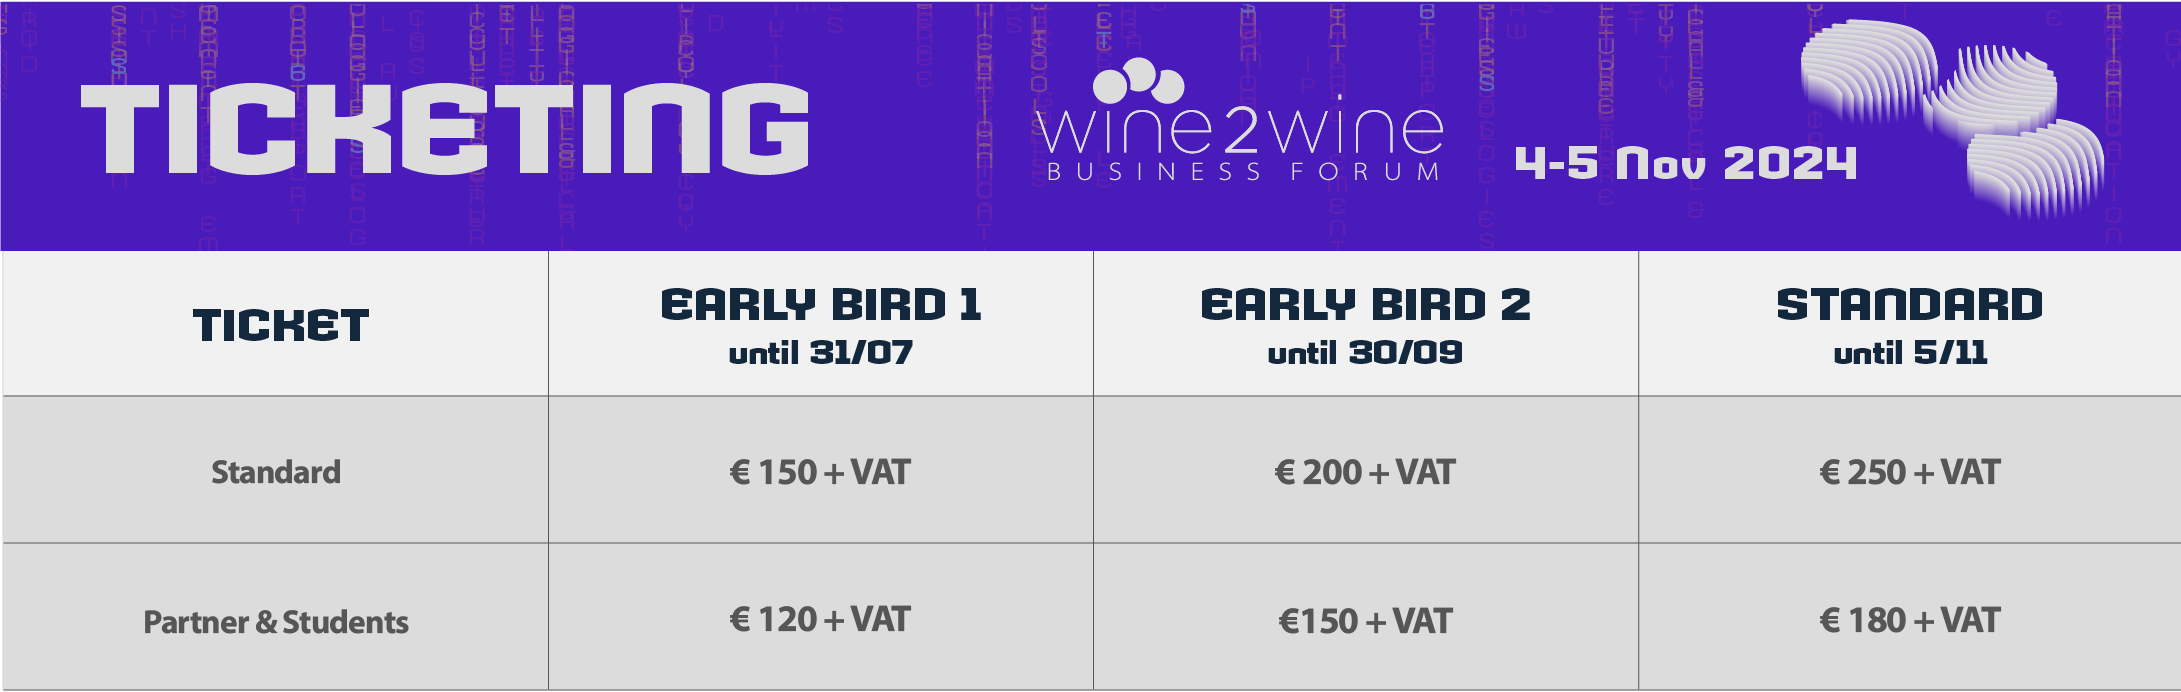 Pricing 2024 wine2wine